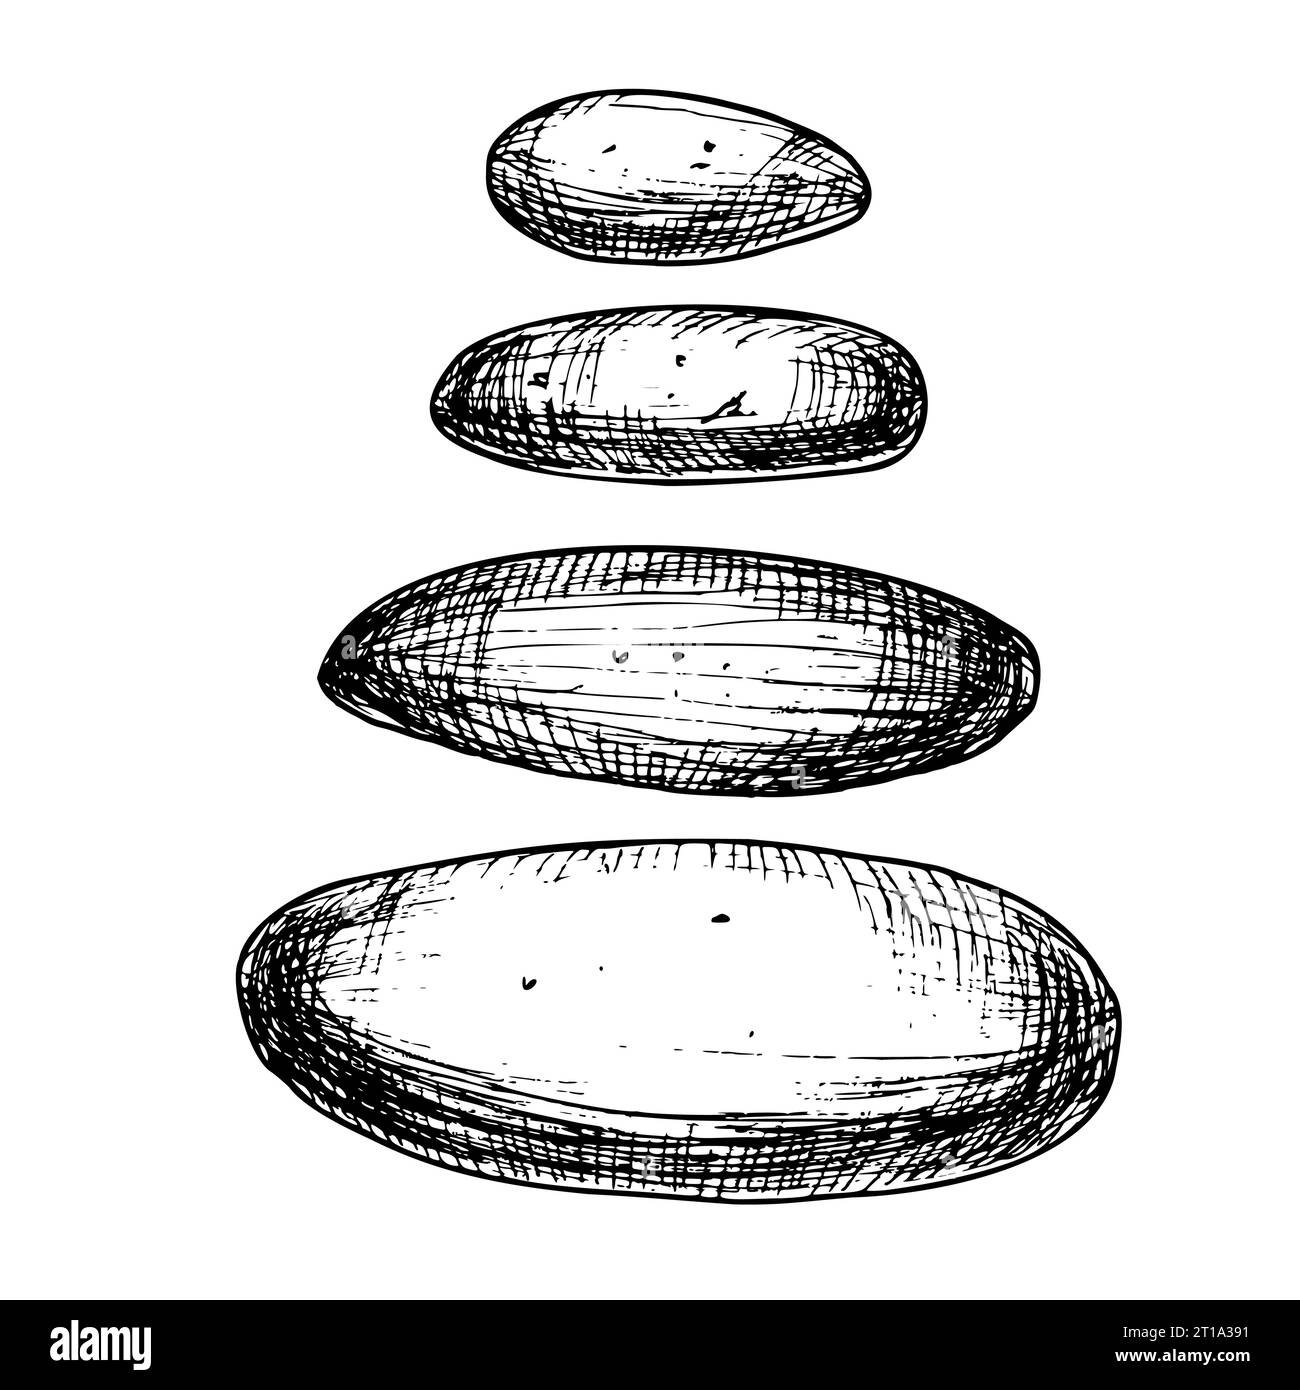 Insieme di pietre marine di dimensioni diverse isolate su uno sfondo. Illustrazione vettoriale disegnata a mano di ciottoli sott'acqua per lo stile zen in line art. Decorazioni per acquari. Fascio di rocce per design spa. Illustrazione Vettoriale